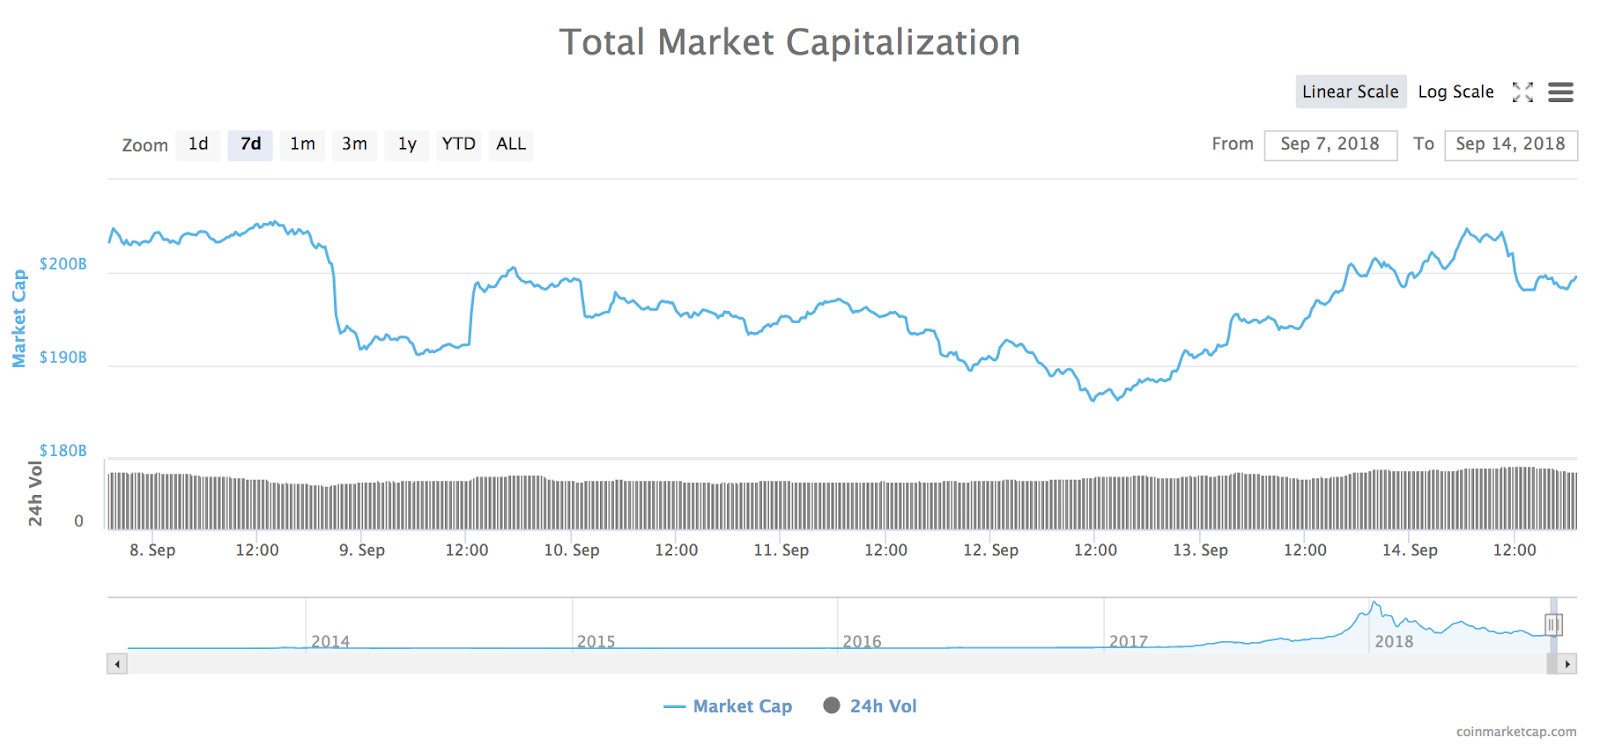 Grafico a 7 giorni della capitalizzazione di mercato totale di tutte le criptovalute